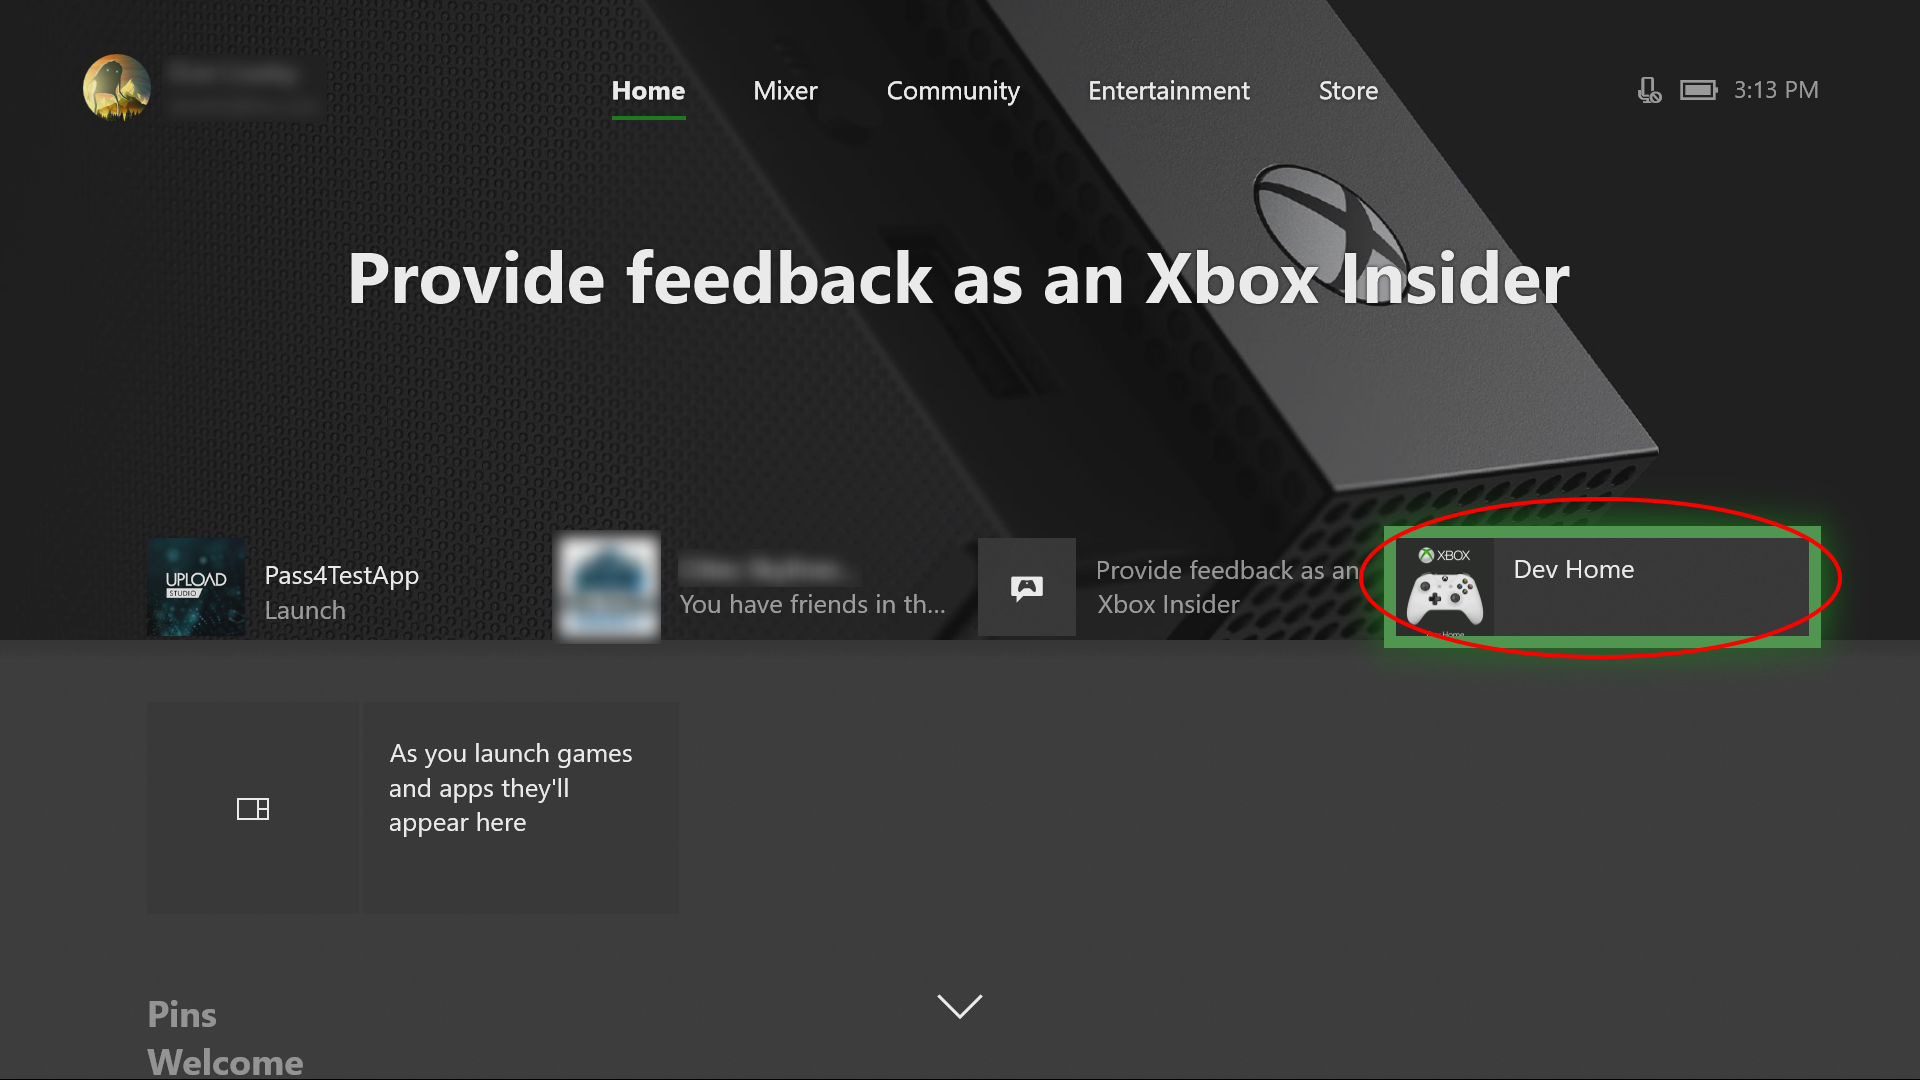 Portale di dispositivi per Xbox - UWP applications | Microsoft Learn